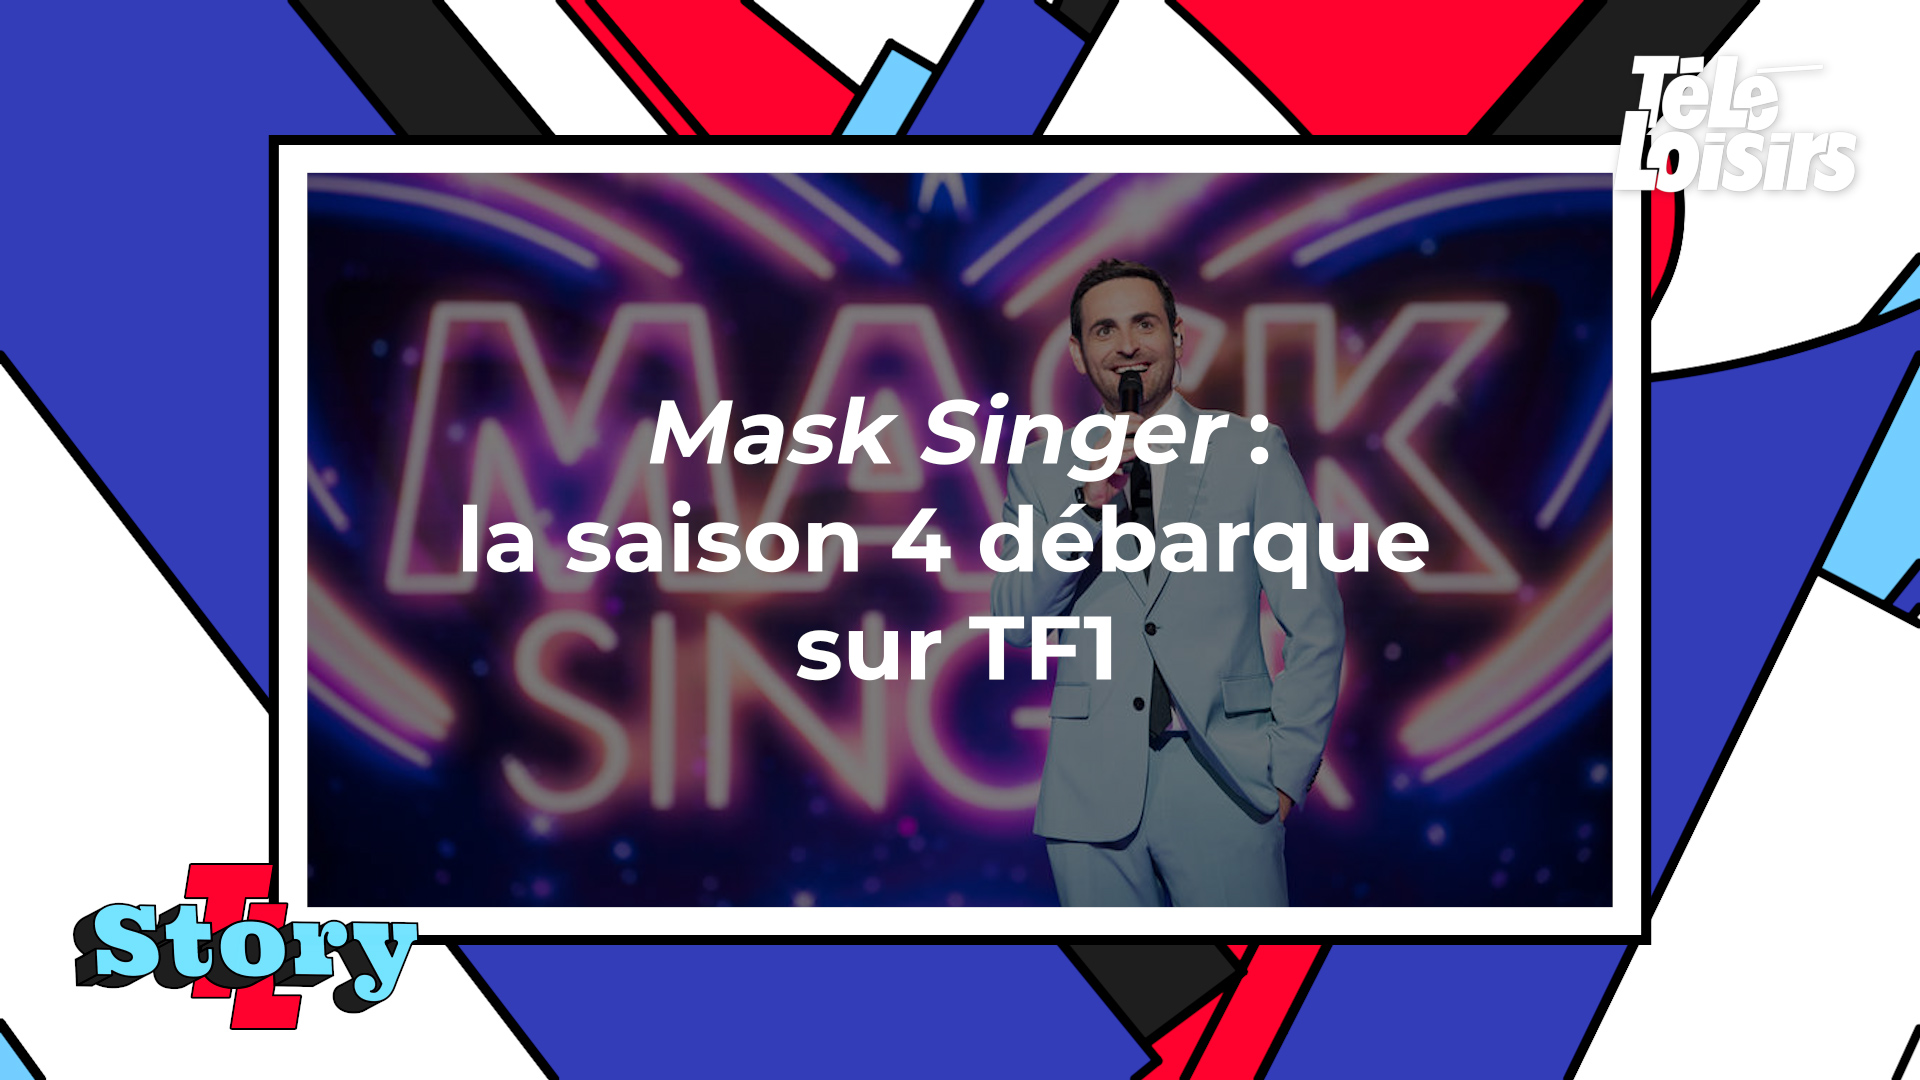 Plein de blagues ont été coupées: Jean-Marc, la marionnette de Jeff  Panacloc, censurée dans Mask Singer - La DH/Les Sports+